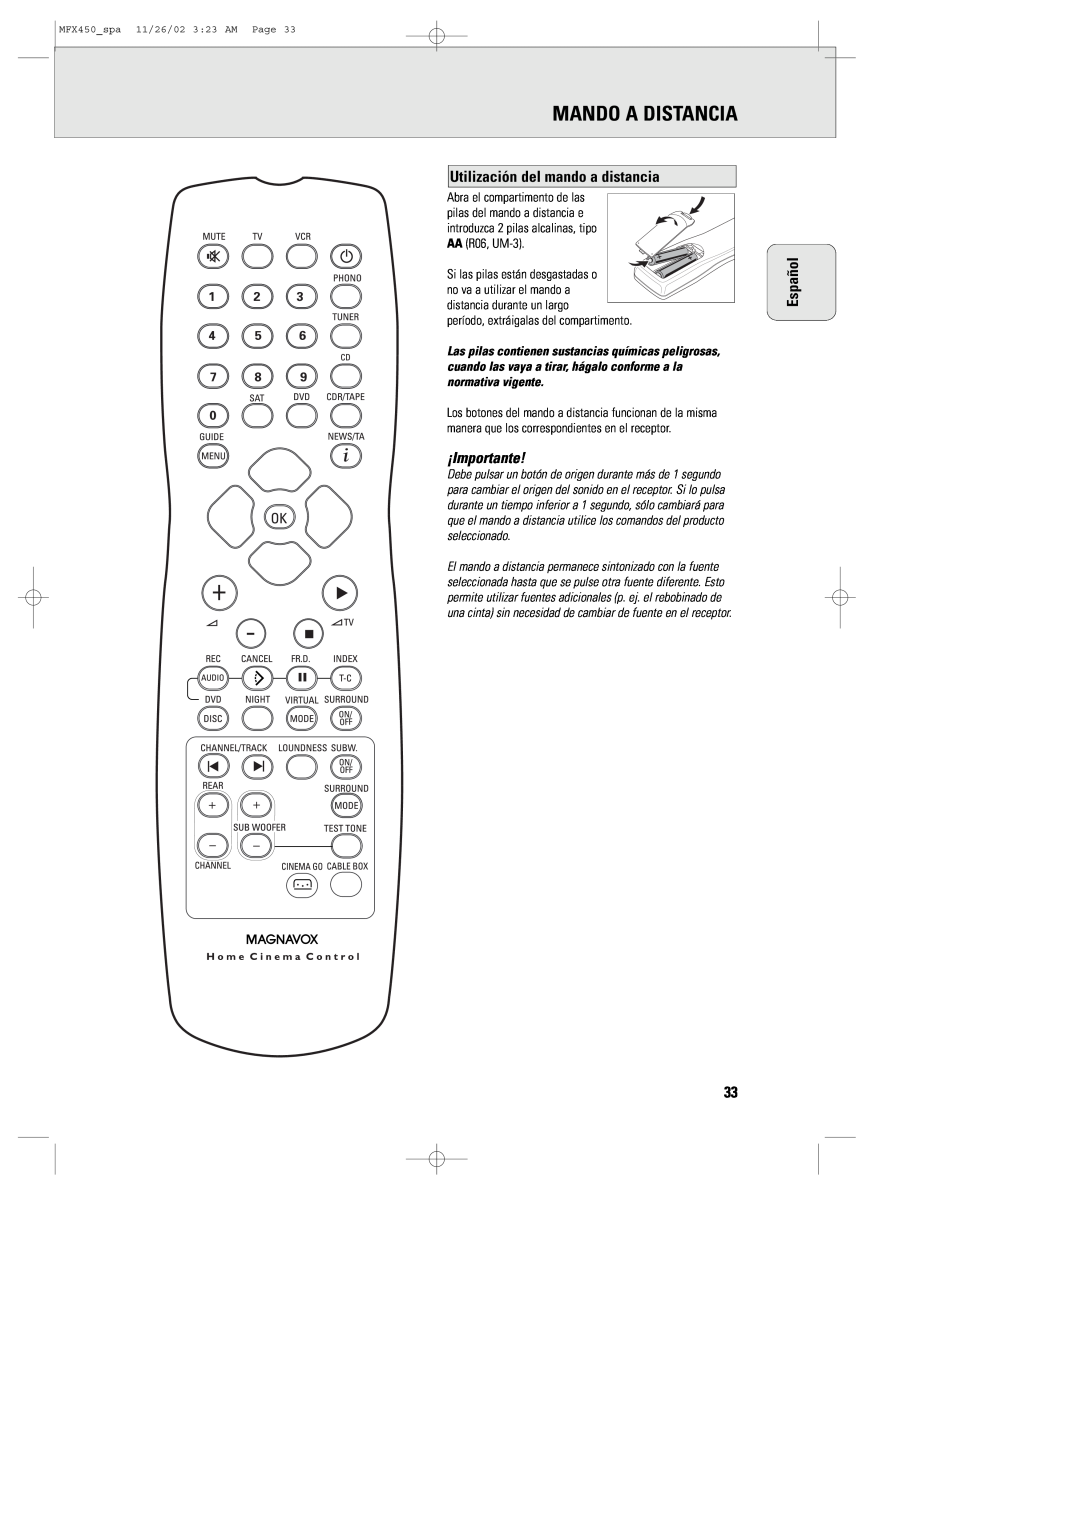 Magnavox MCS 990/17, MSW 990/17, MMX450/17 manual Mando A Distancia, Utilización del mando a distancia, ¡Importante, Español 